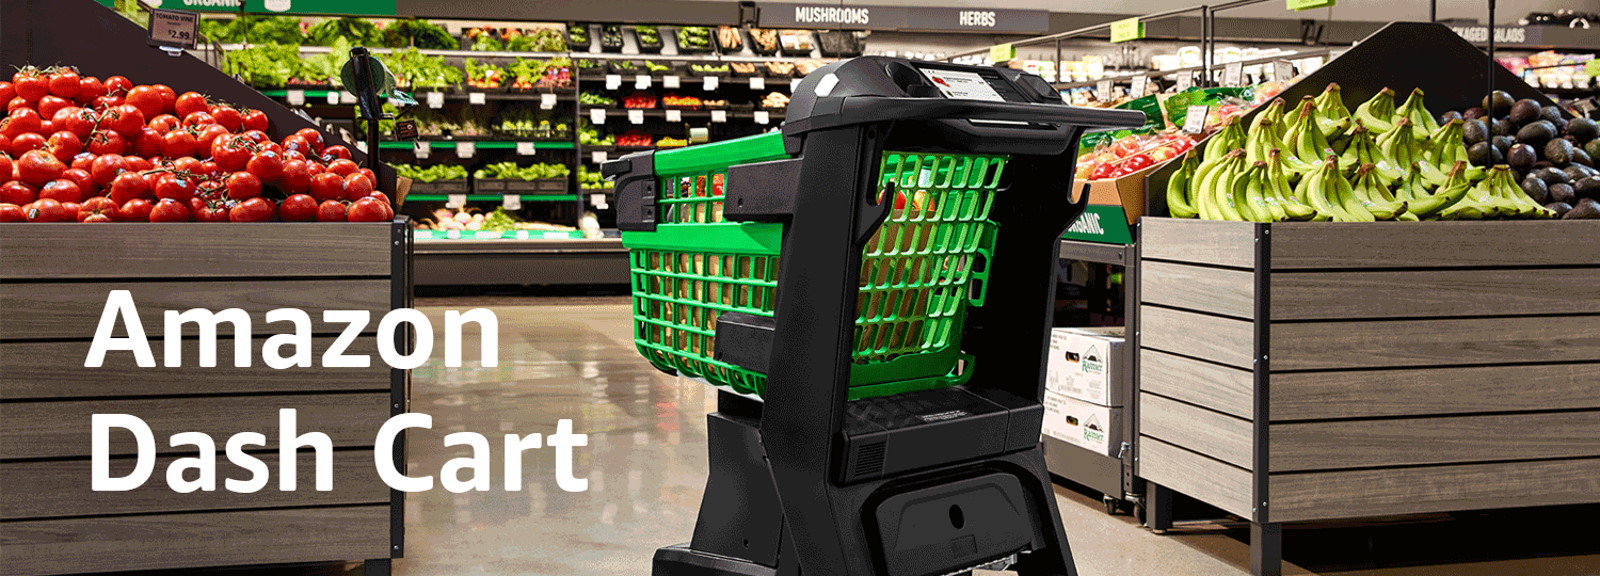 Le nouveau Dash Cart d’Amazon est un chariot de courses qui scanne automatiquement les articles. © Amazon